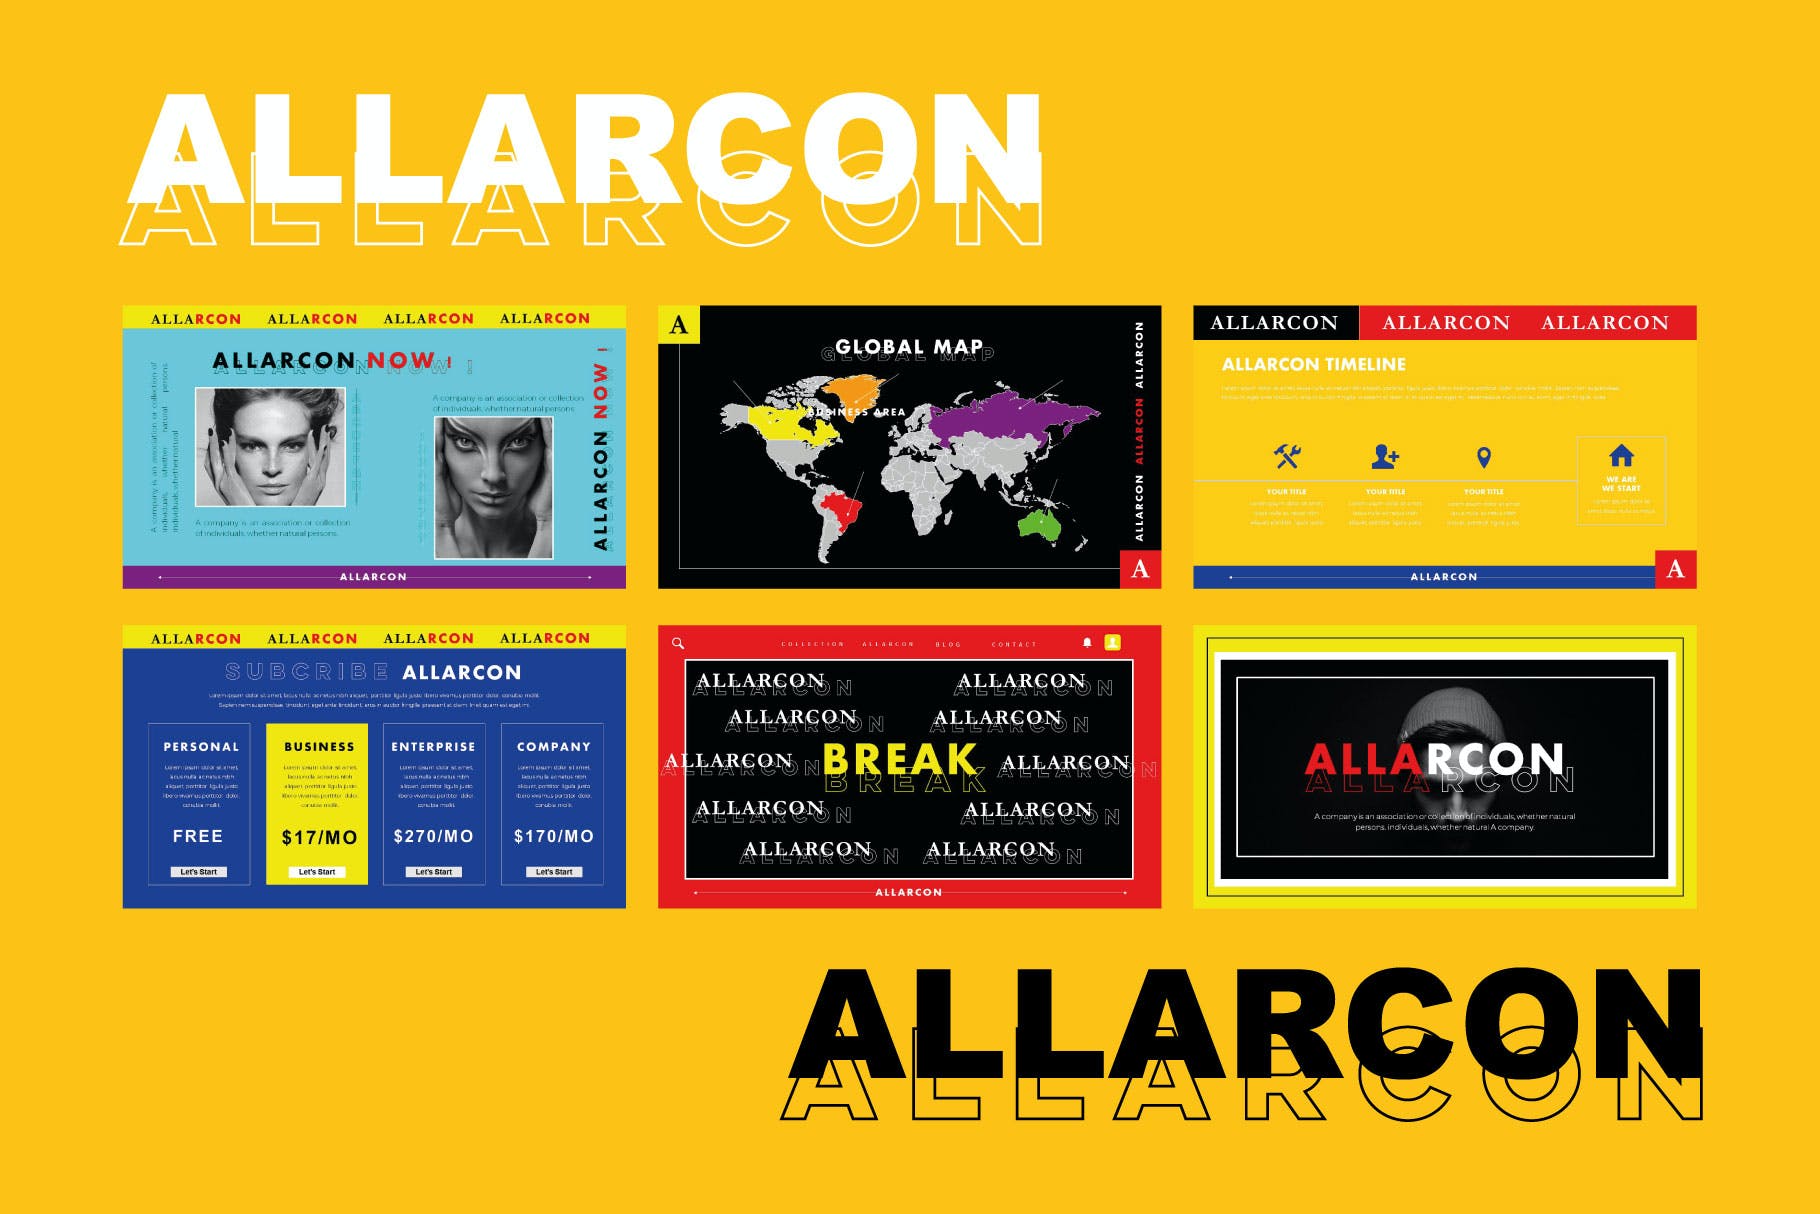 人士创意演讲Powerpoint模板合集 Allarcon – Powerpoint Template设计素材模板